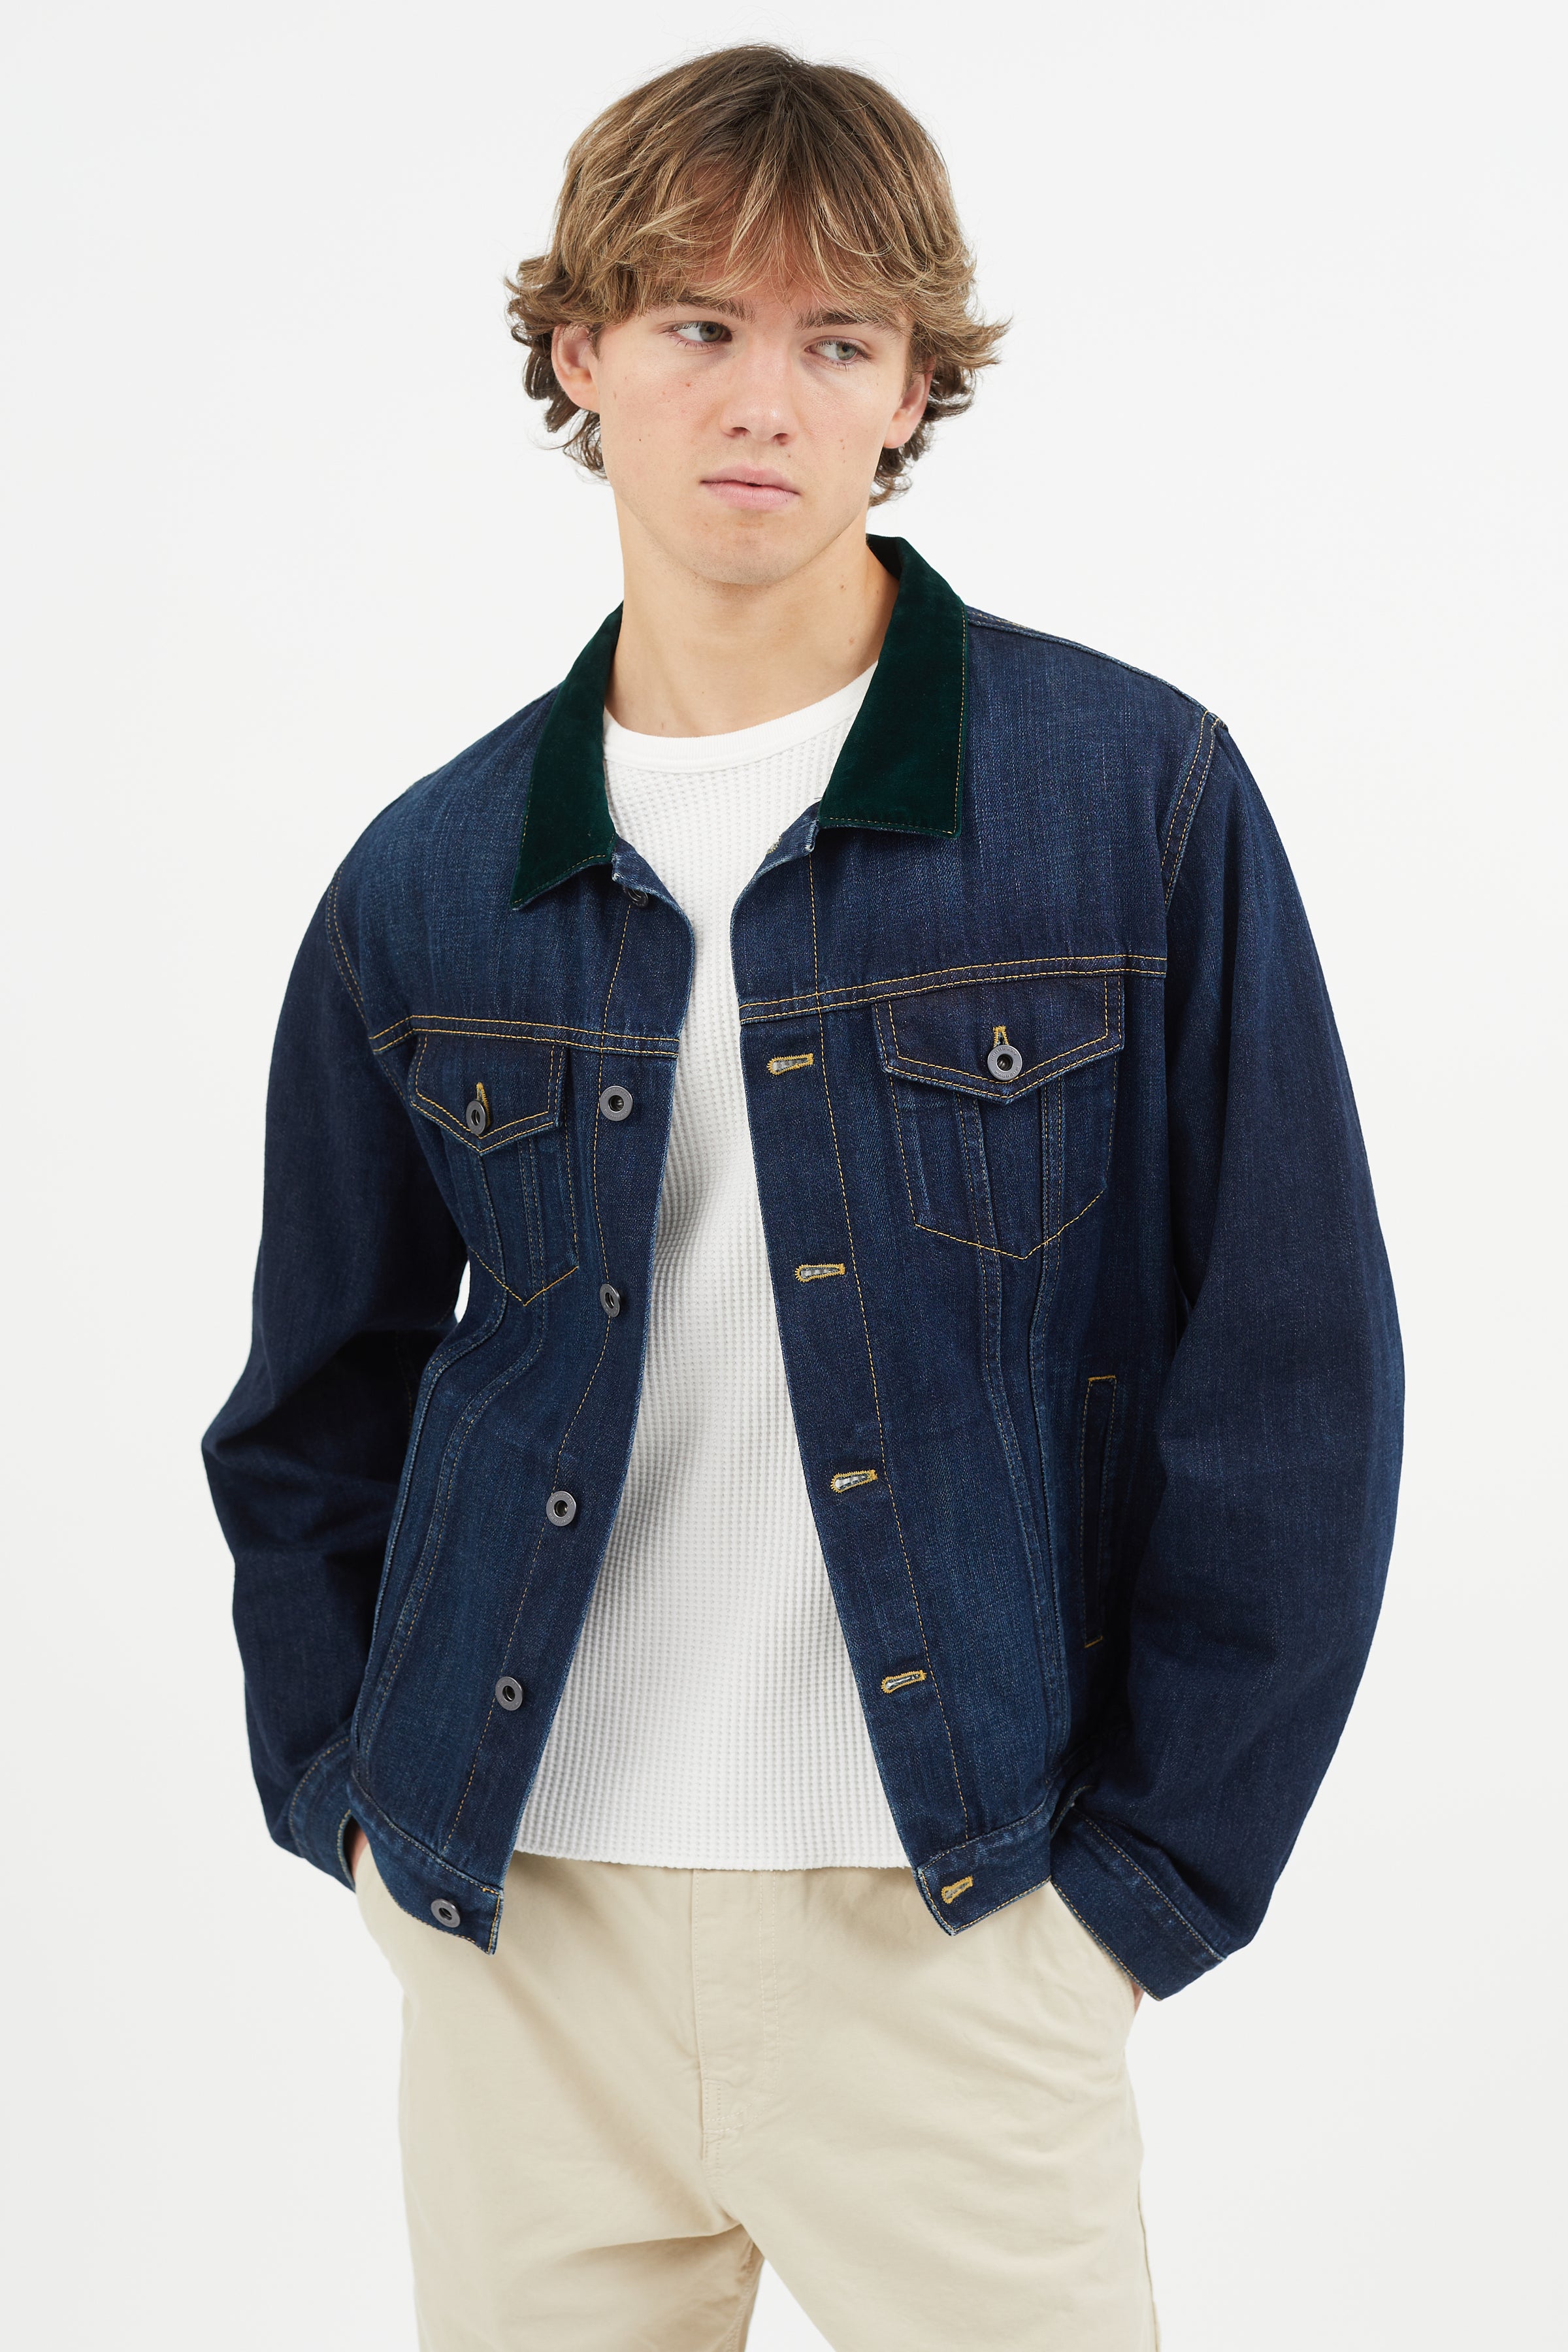 Miluxas Men's Autumn Winter Button Solid Color Vintage Denim Jacket Tops  Blouse Coat Clearance Green 12(XXL) - Walmart.com